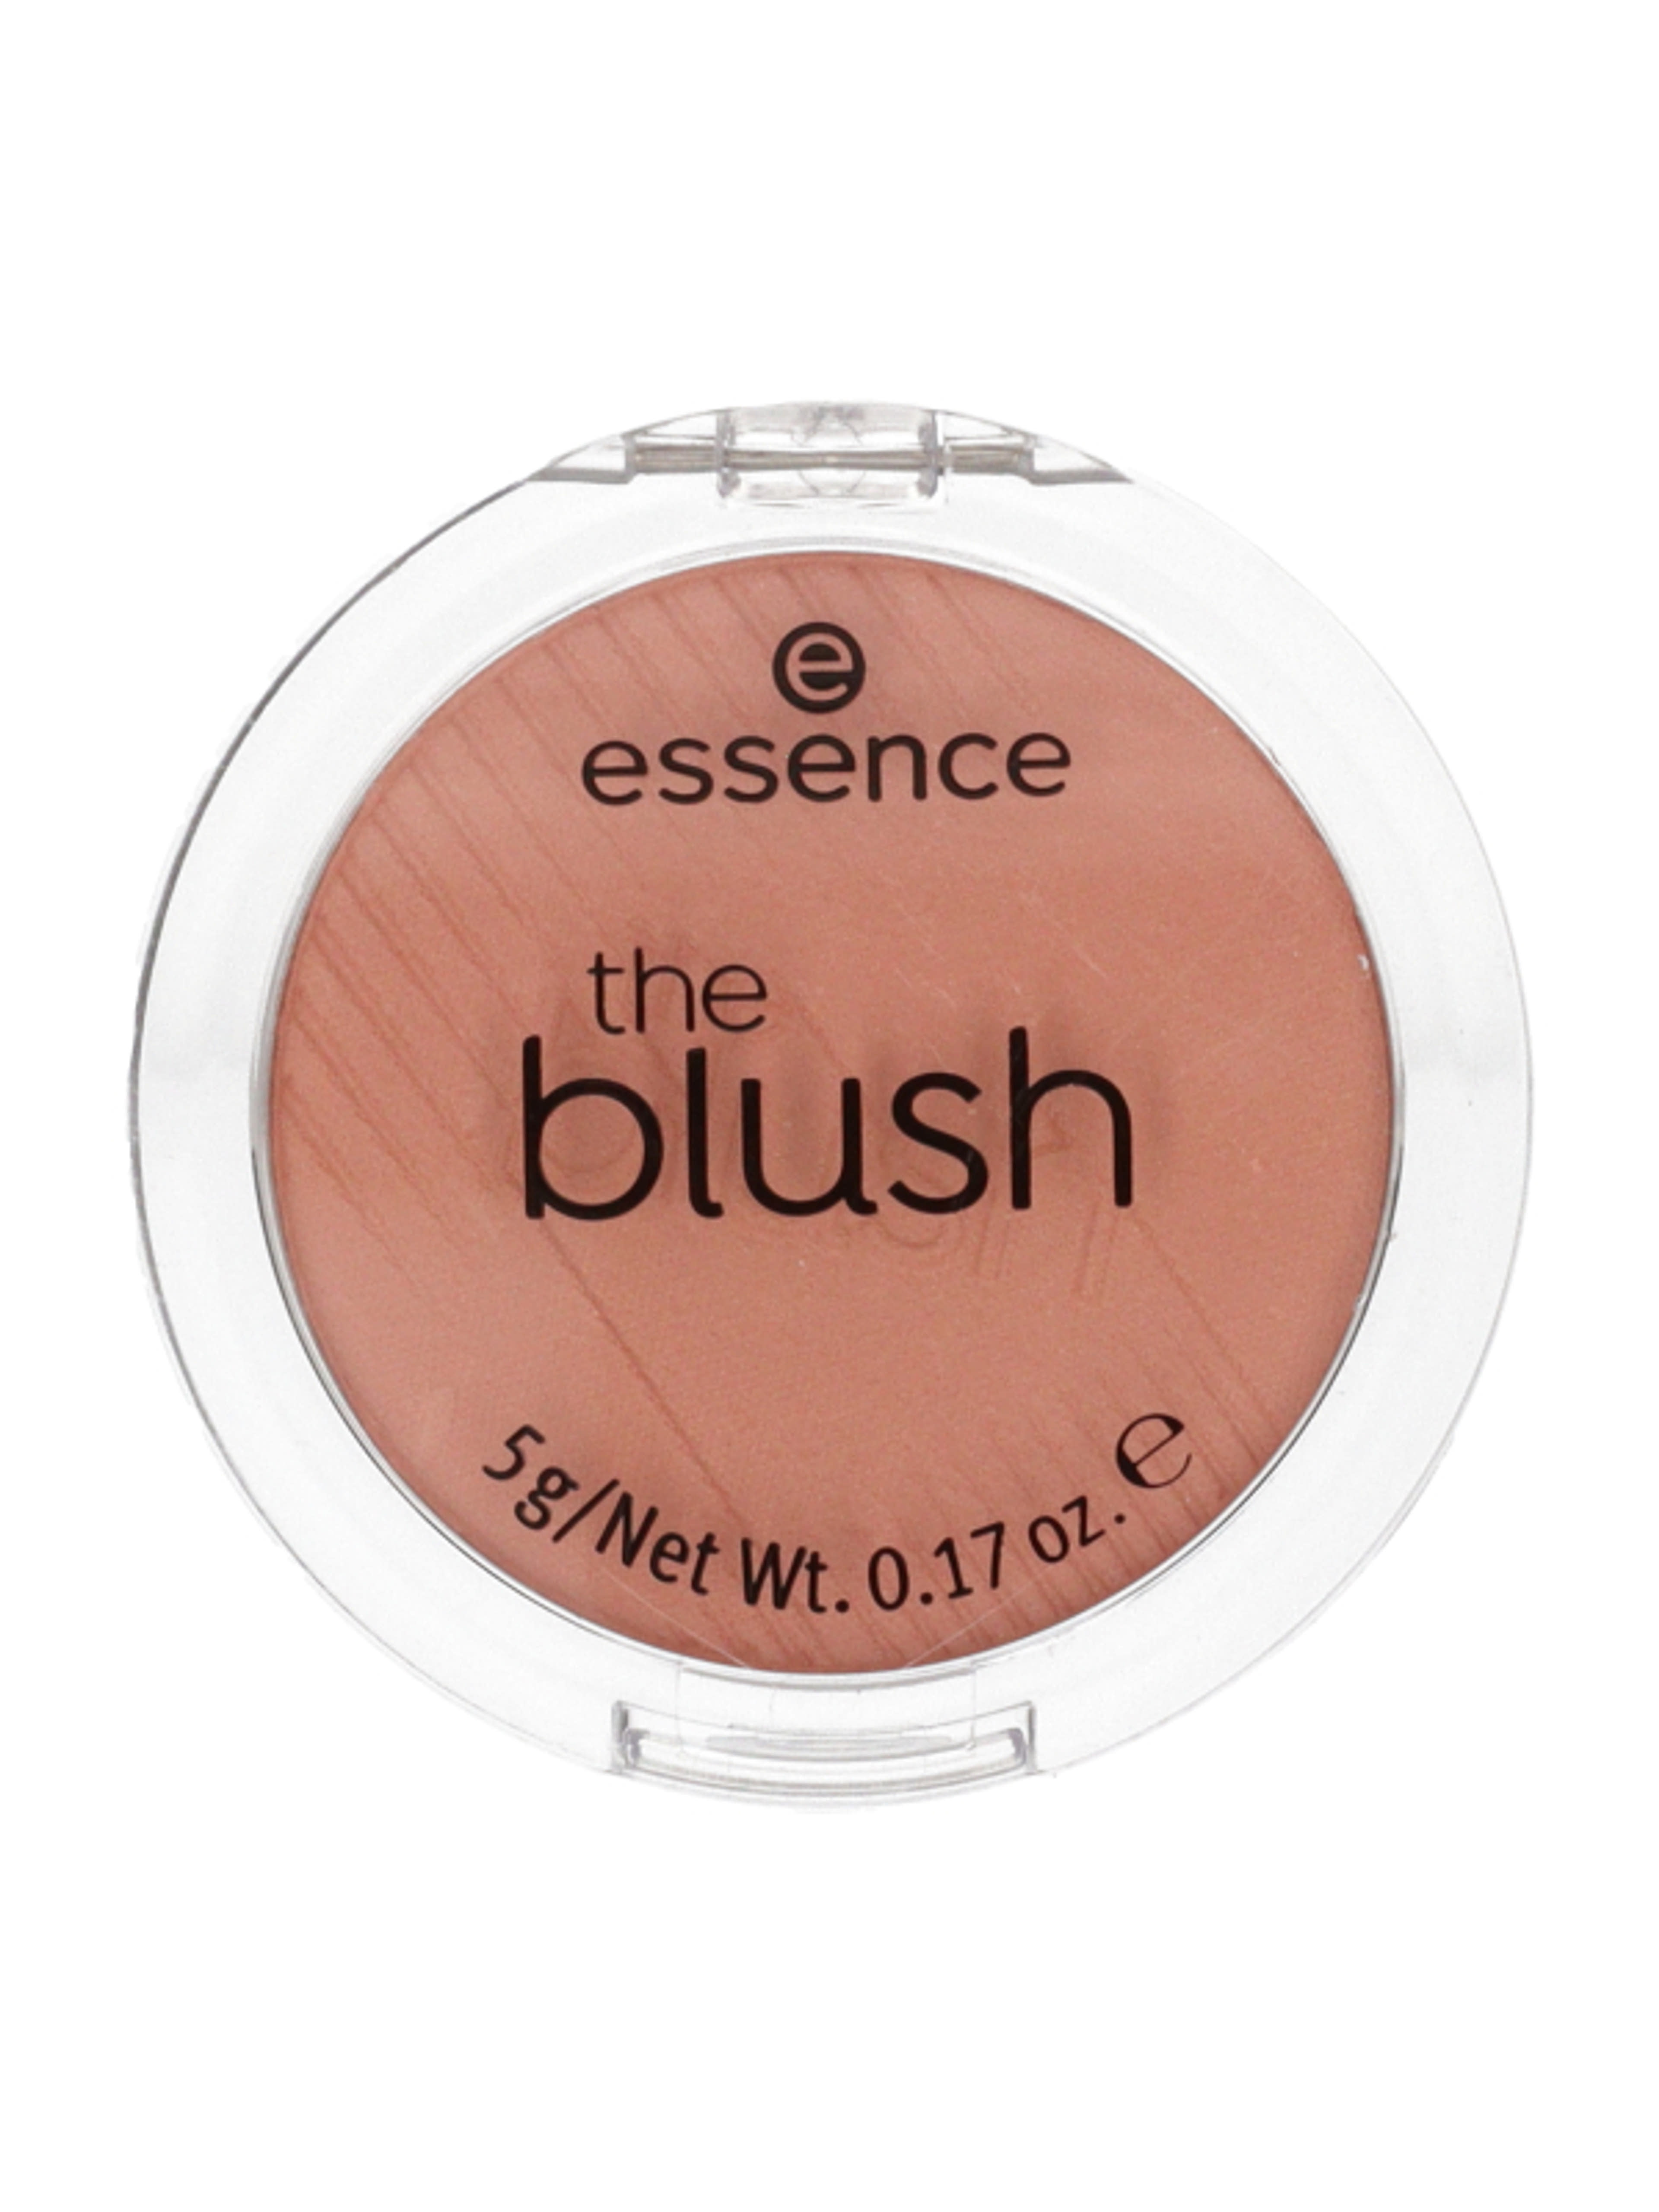 Essence Hello The Blush! pirosító /90 bedazzling - 1 db-1